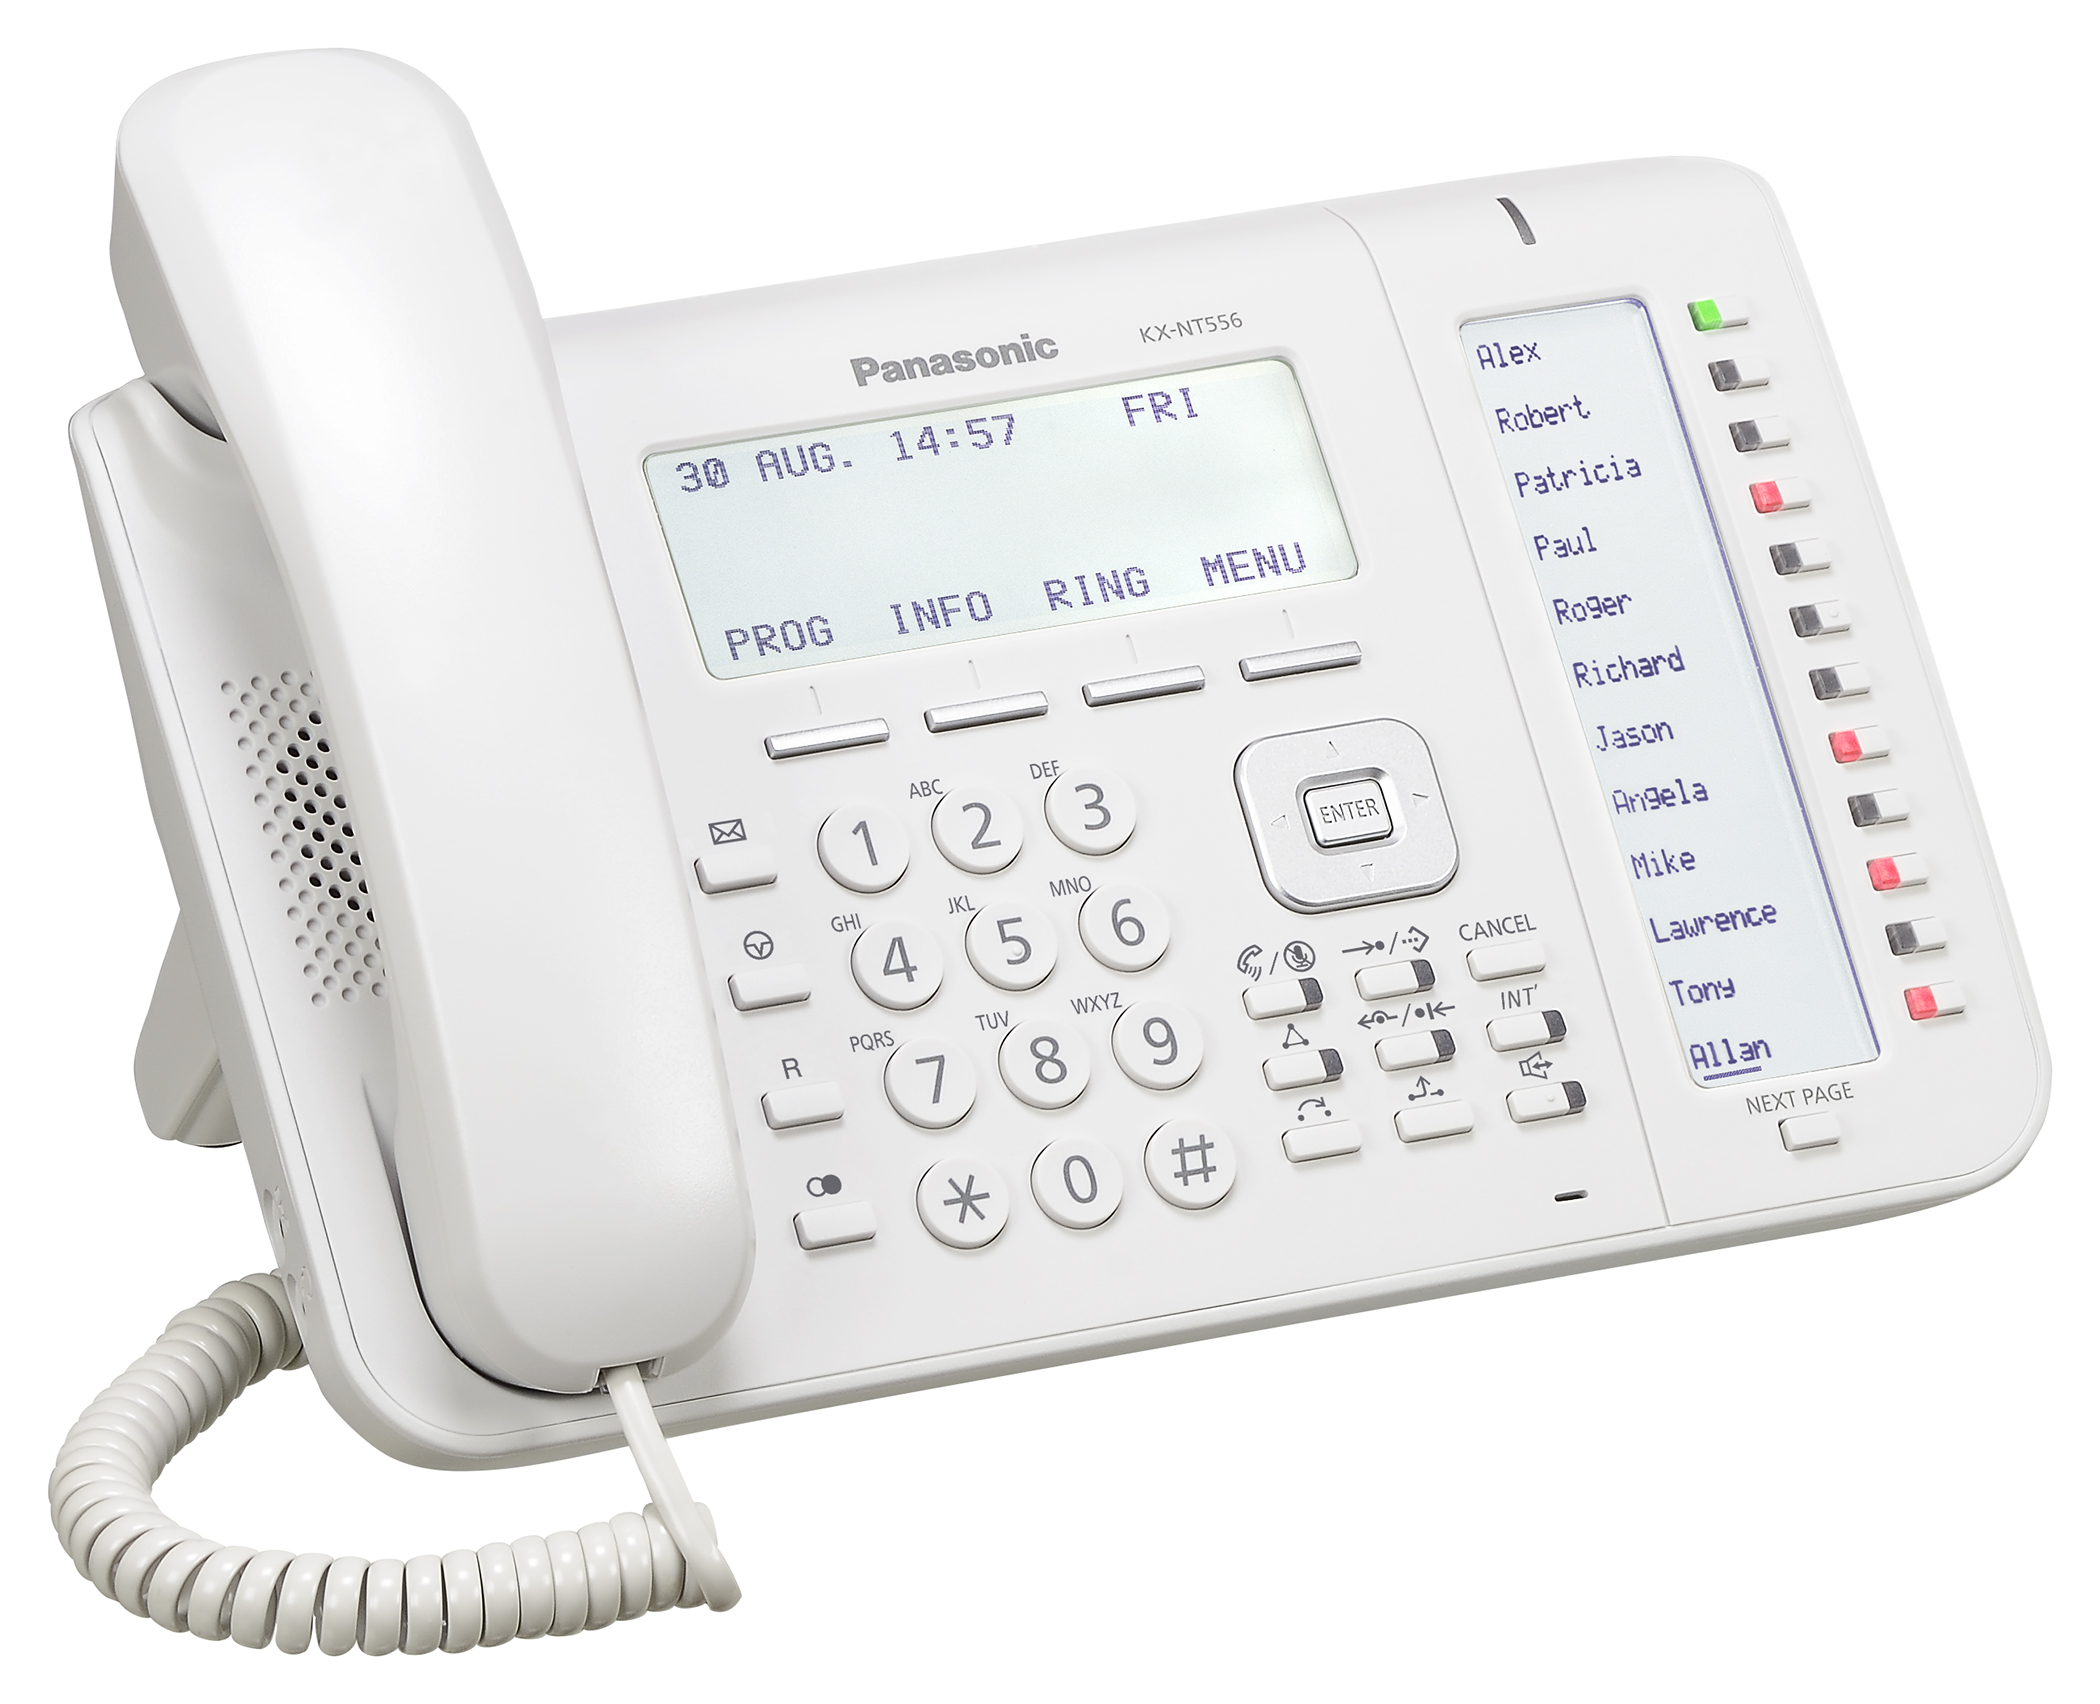 Telefono Panasonic KX-NT556 en color Blanco para Conmutadores Panasonic Digitales KX-TDE, KX-NCP y Panasonic Servidor de Comunicaciones KX-NS